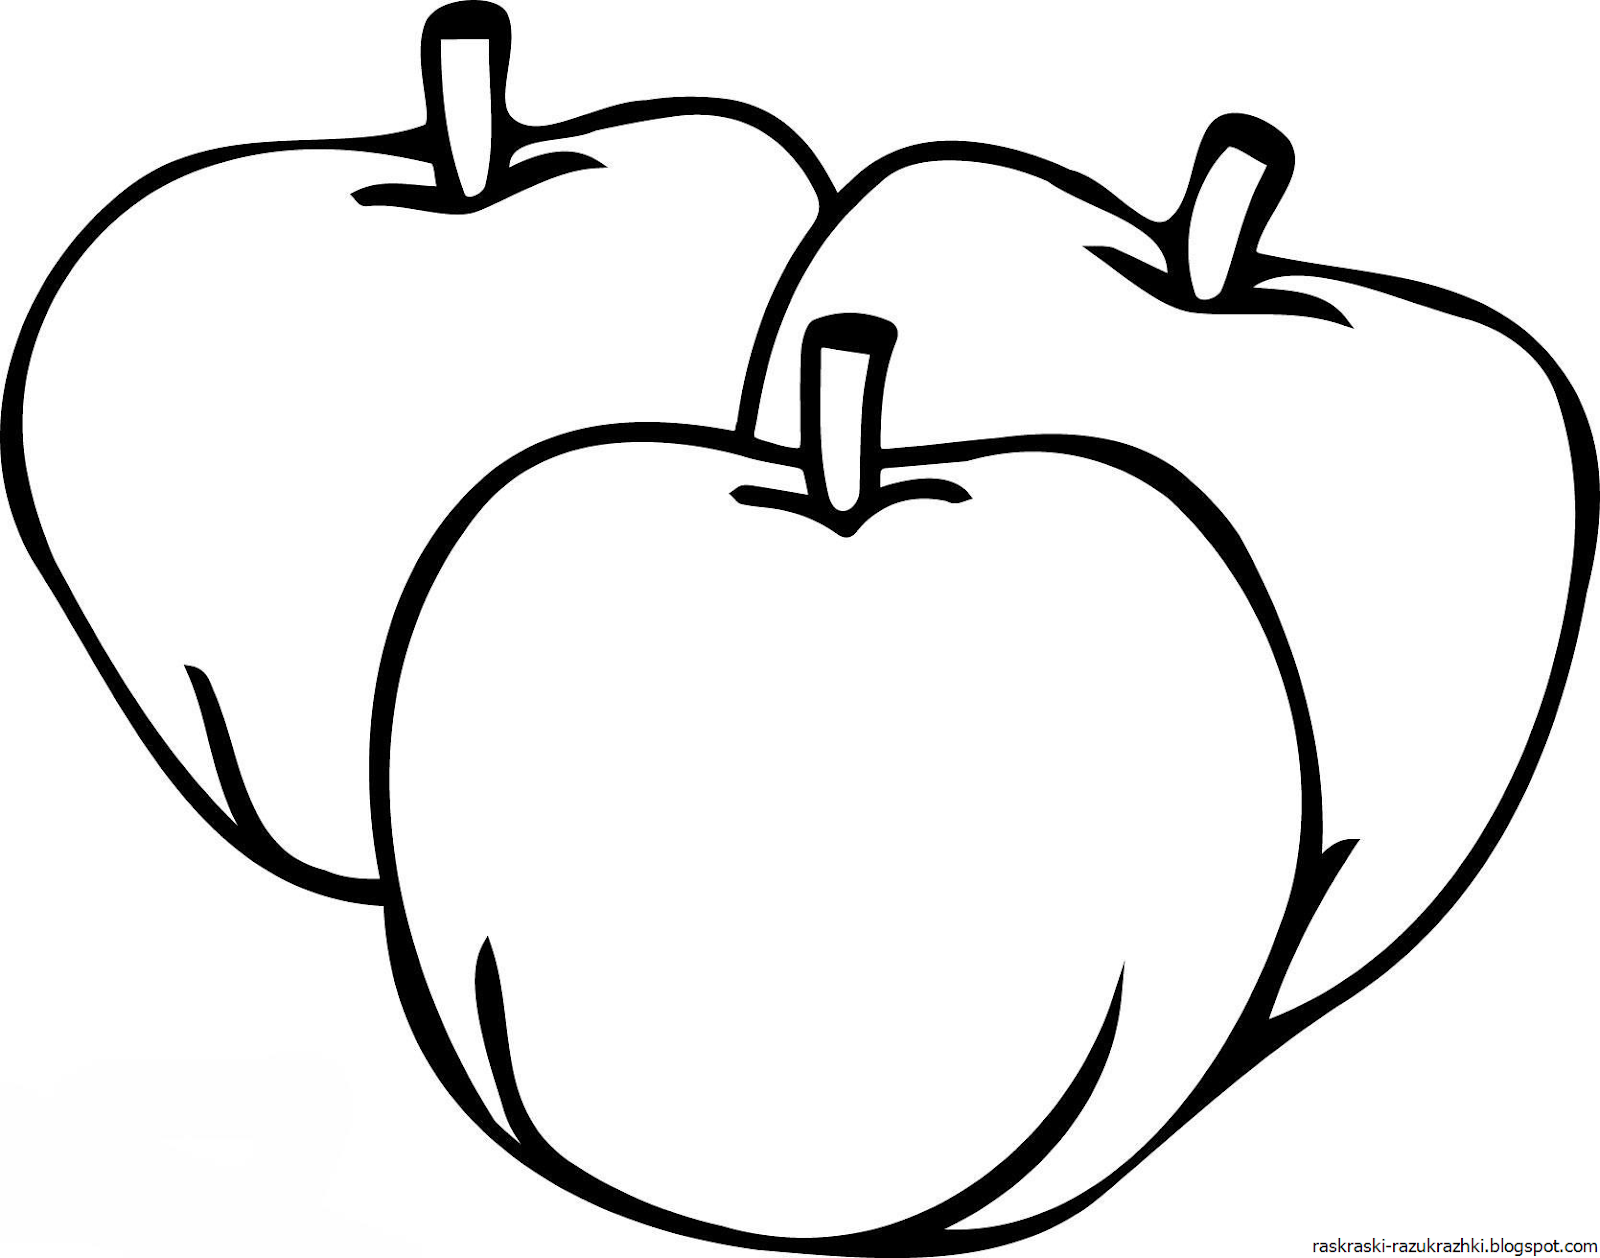 Раскраска 3 яблока. Яблоко раскраска. Яблоко раскраска для детей. Яблочко раскраска. Яблоко раскраска для малышей.